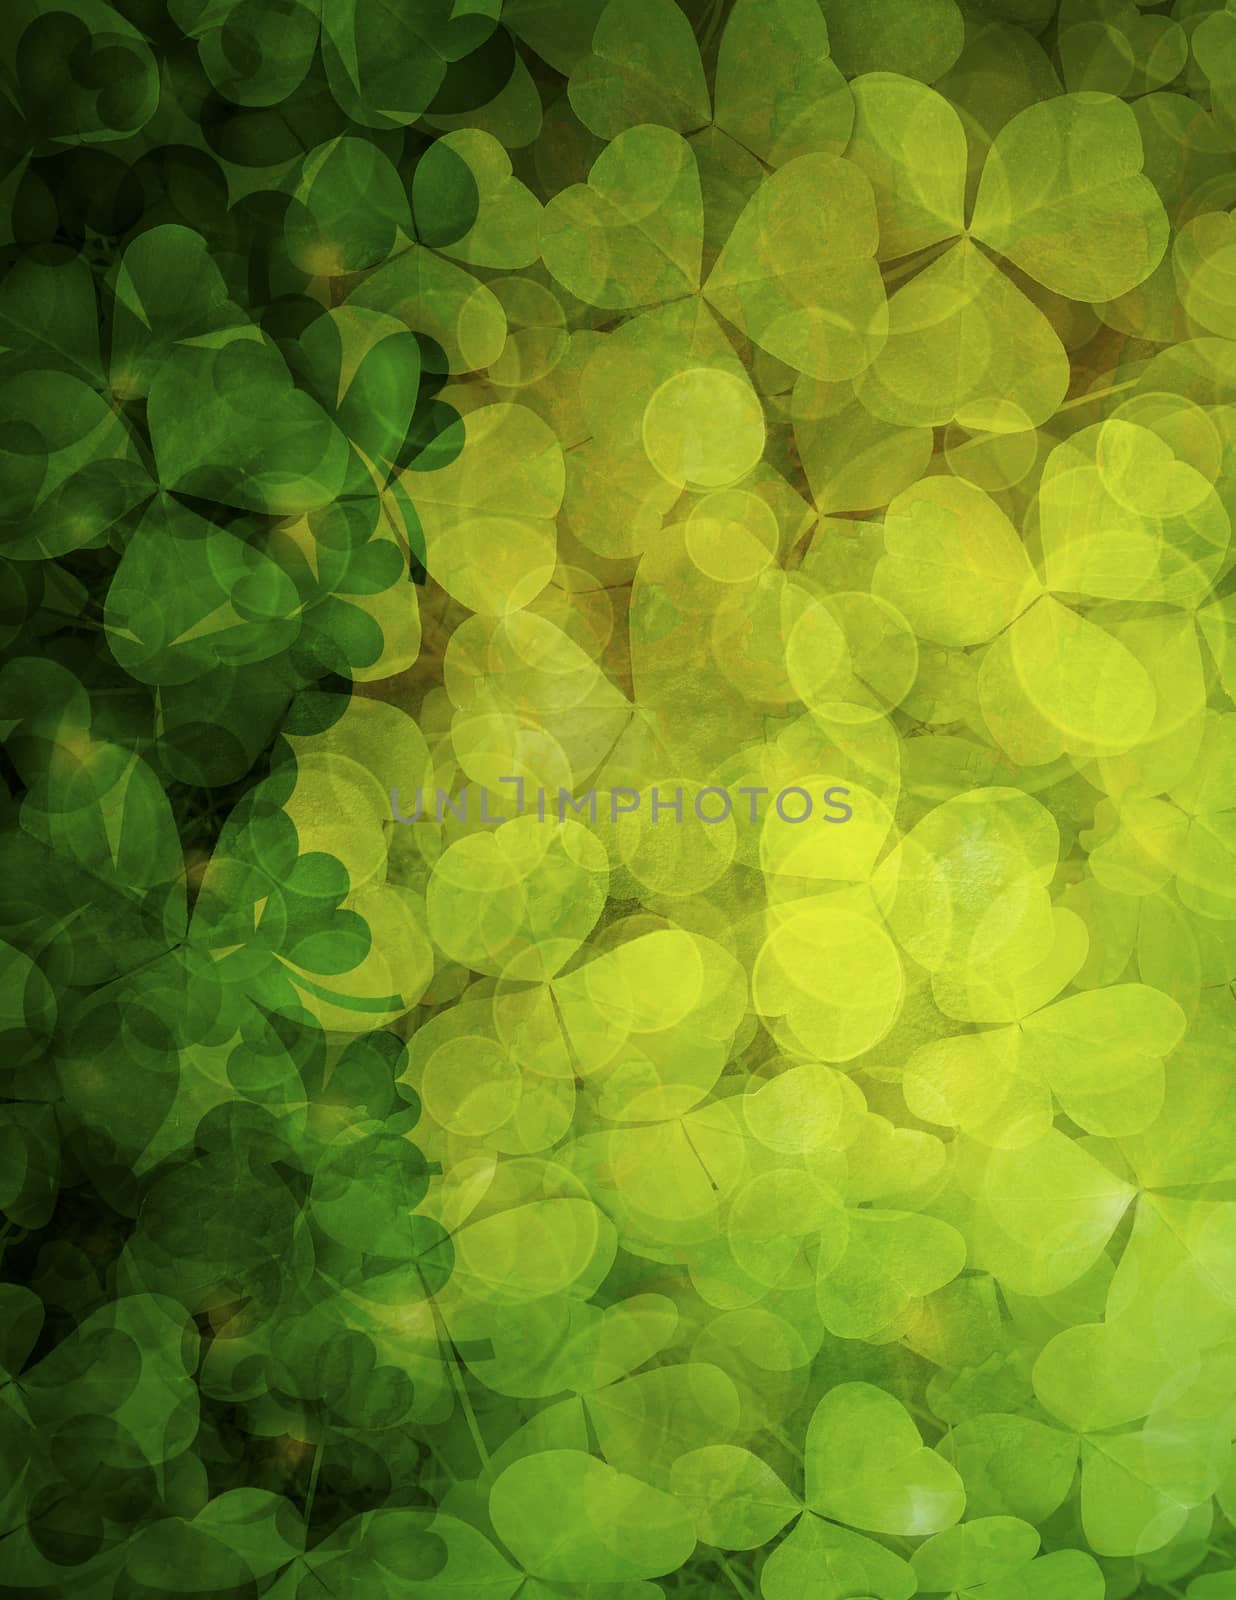 Shamrock Leaves Background Illustration by jpldesigns